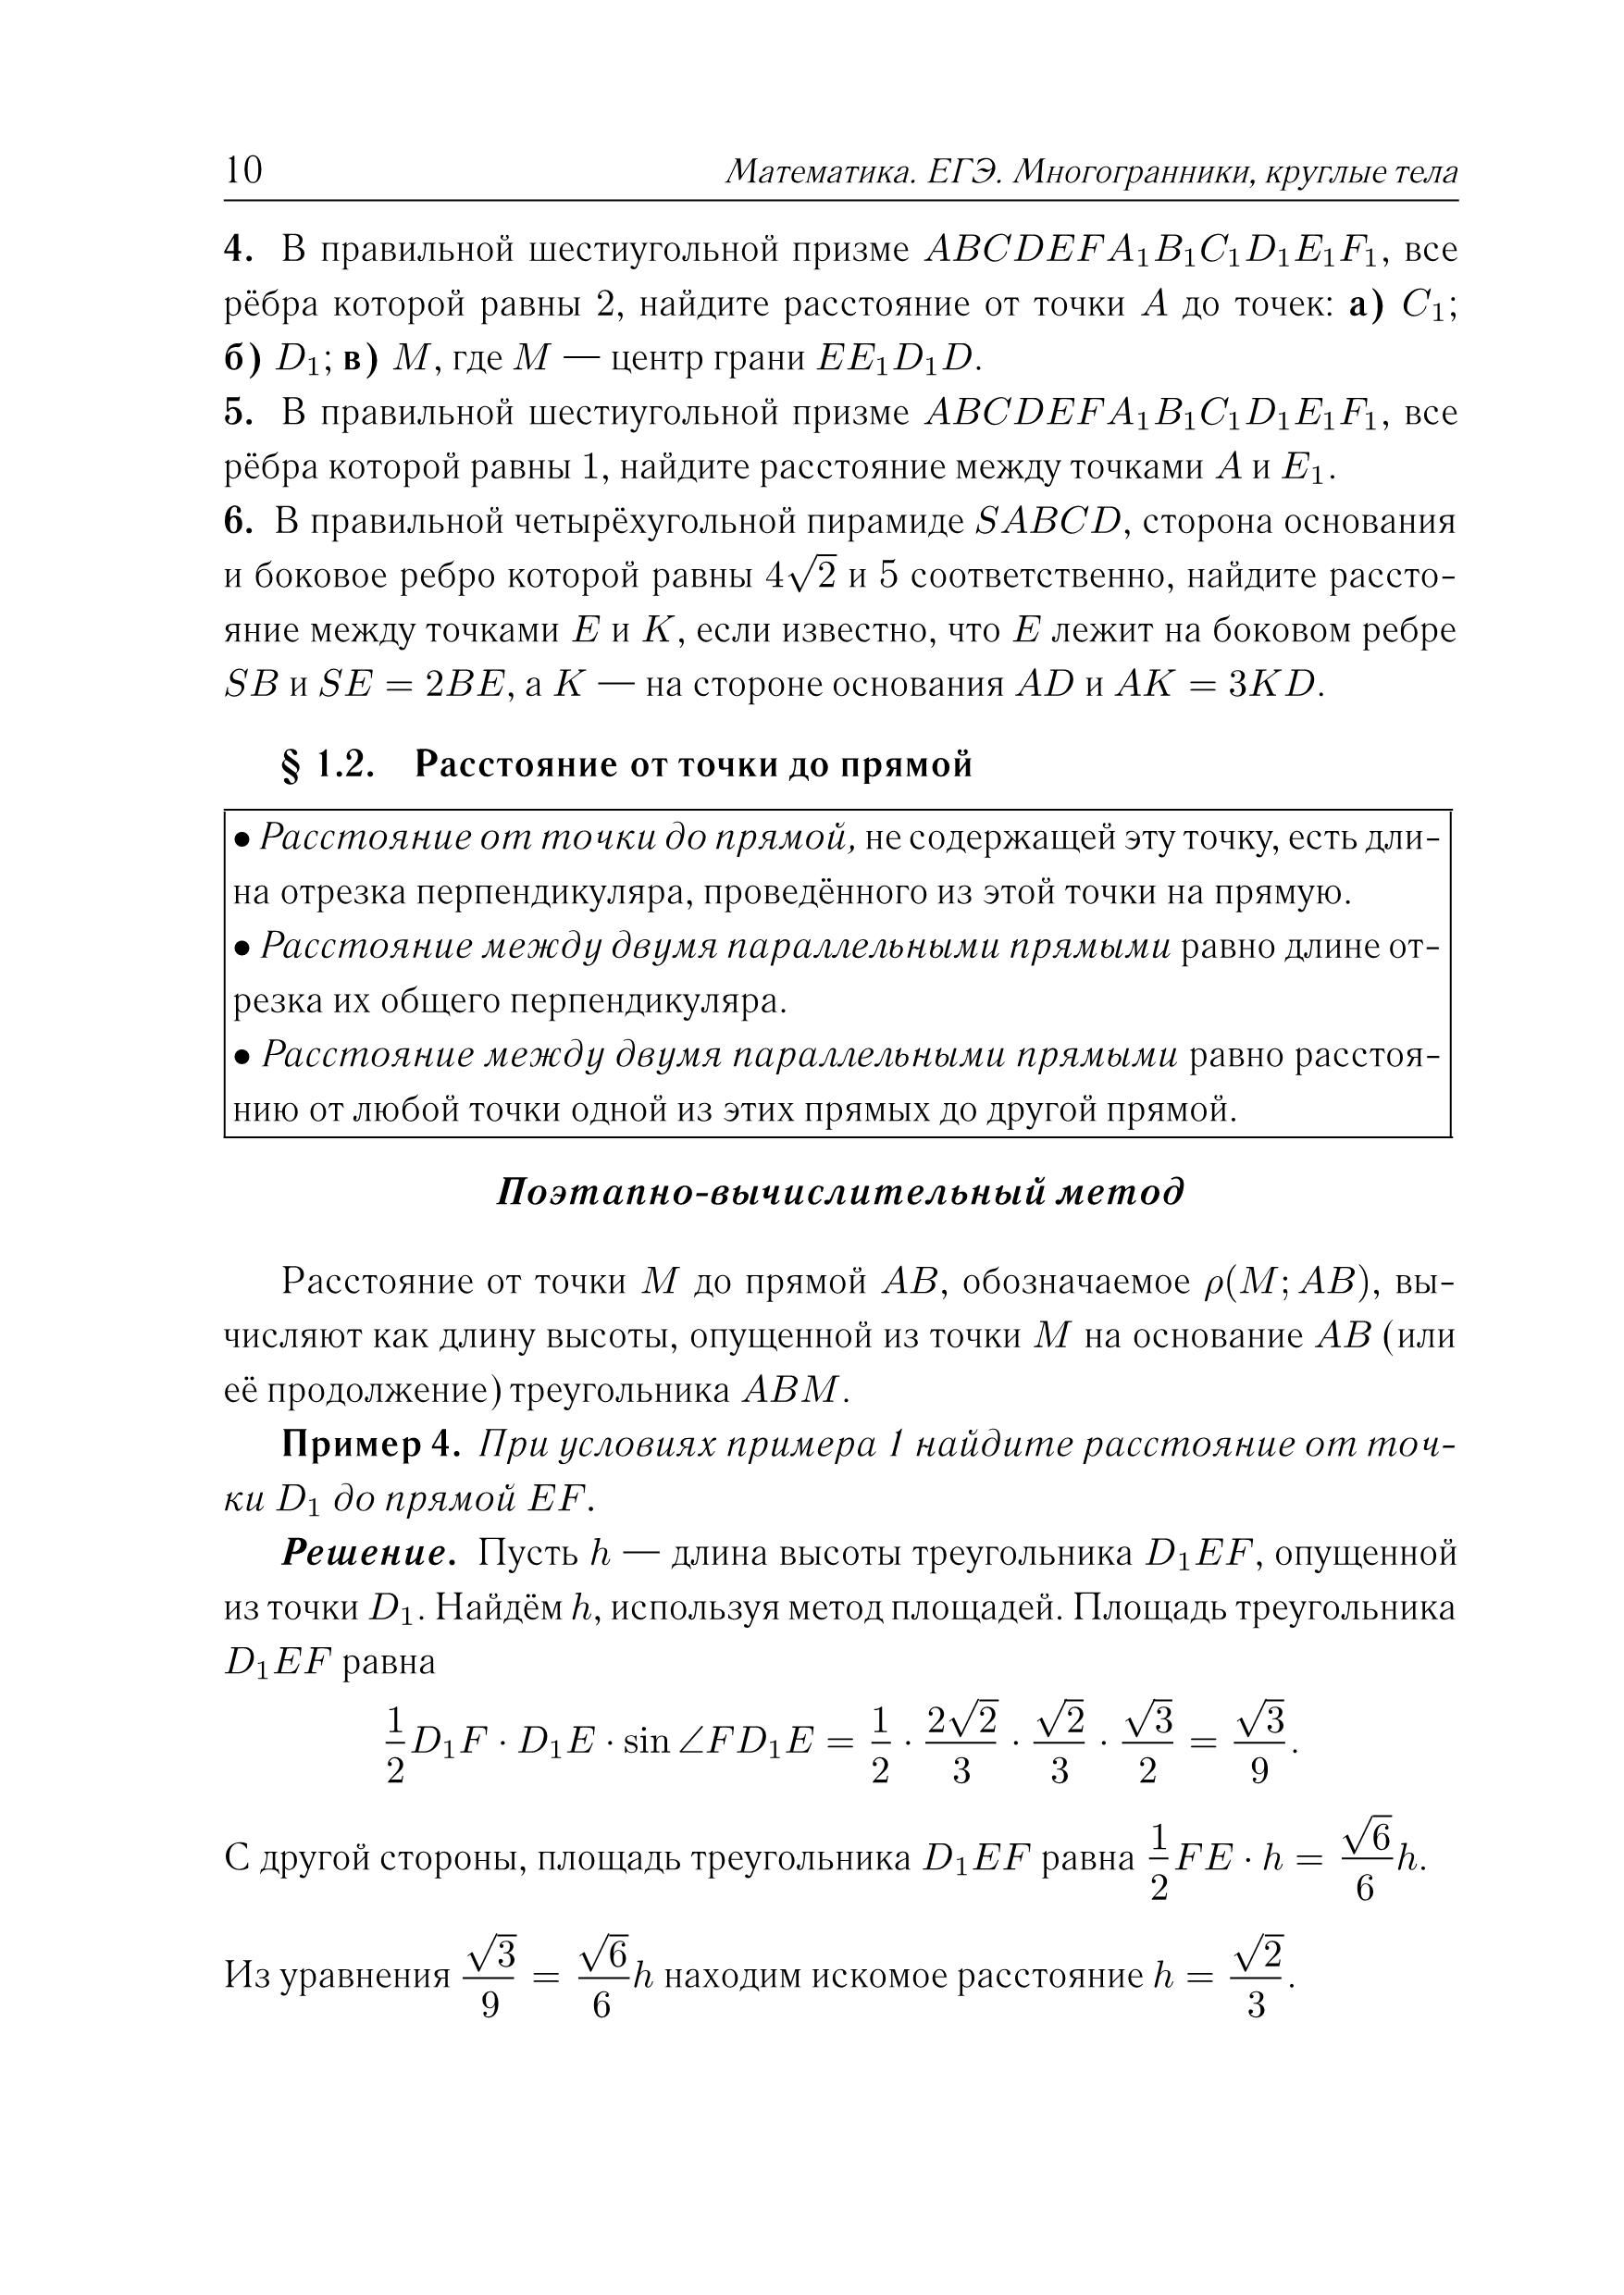 Математика. ЕГЭ. Многогранники, круглые тела (типовое задание 14). 3-е изд.